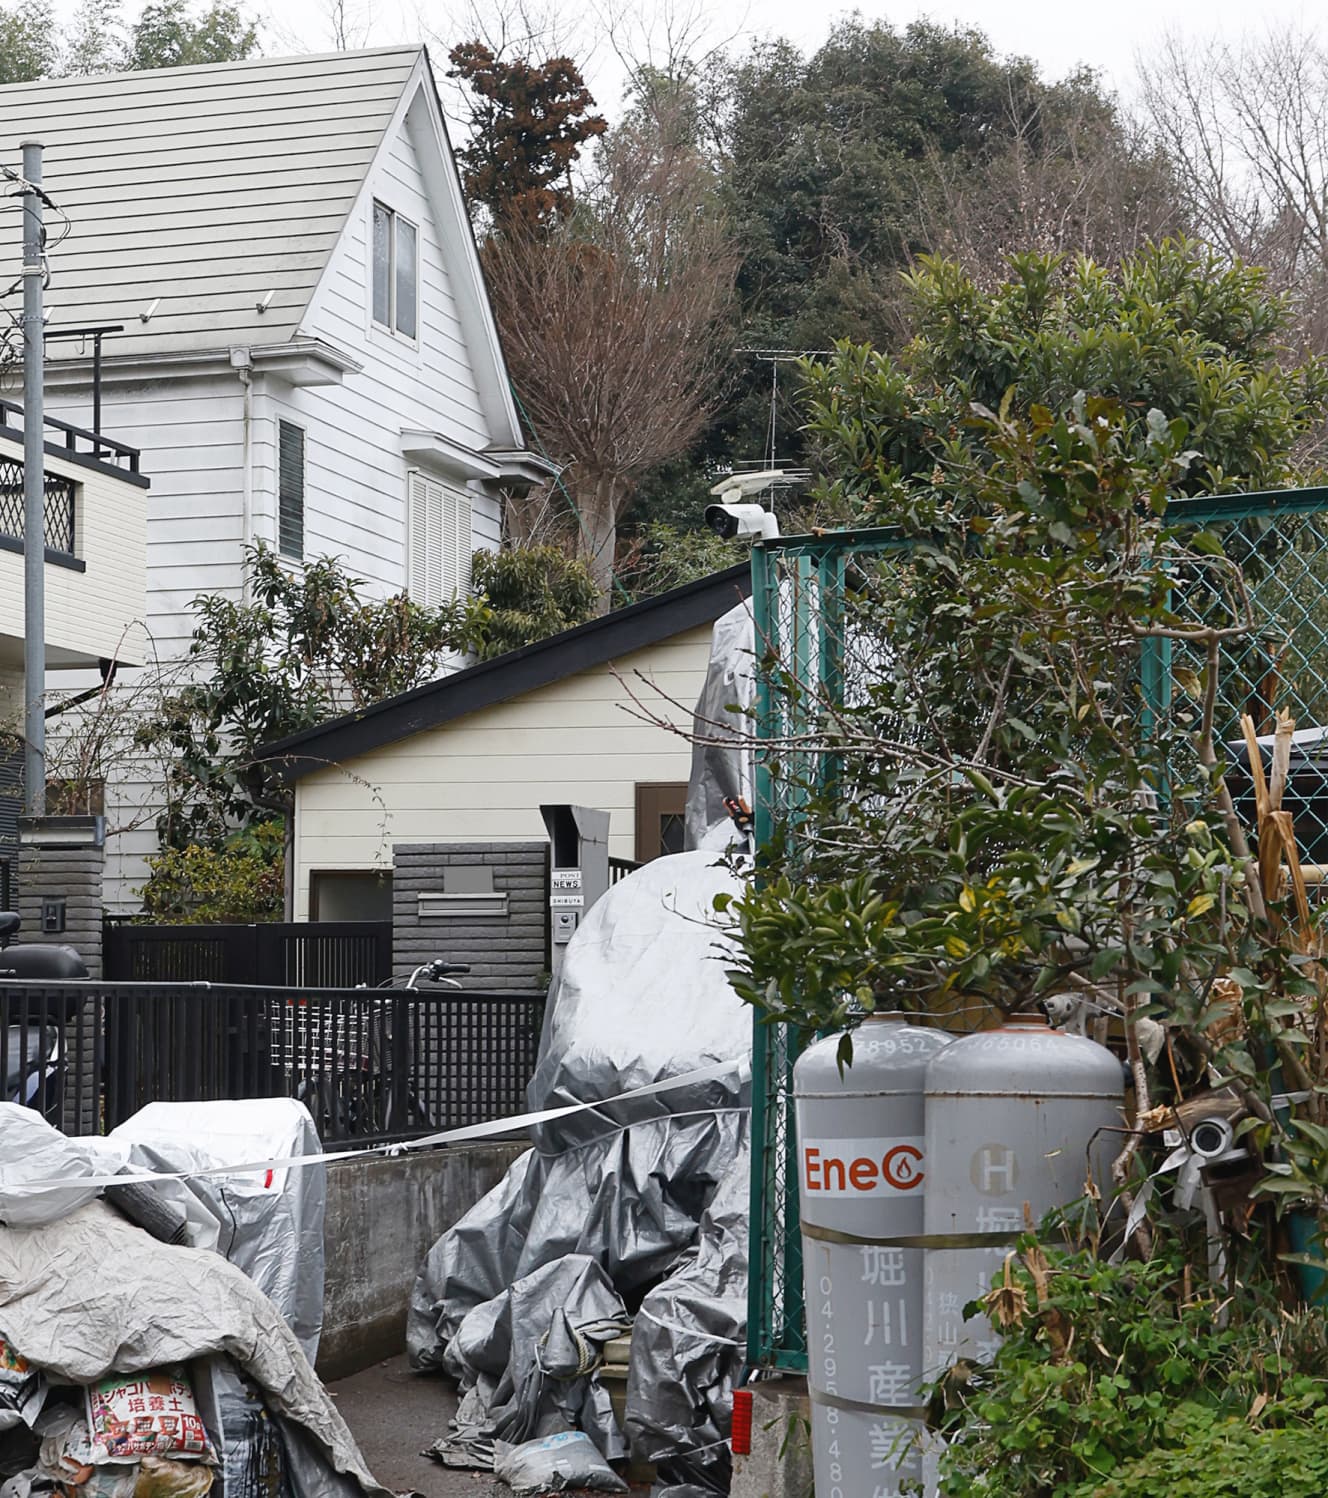 一夫多妻生活が行われていた渋谷容疑者の自宅（中央上）。敷地内には園芸用と思われる肥料が無造作に置かれる